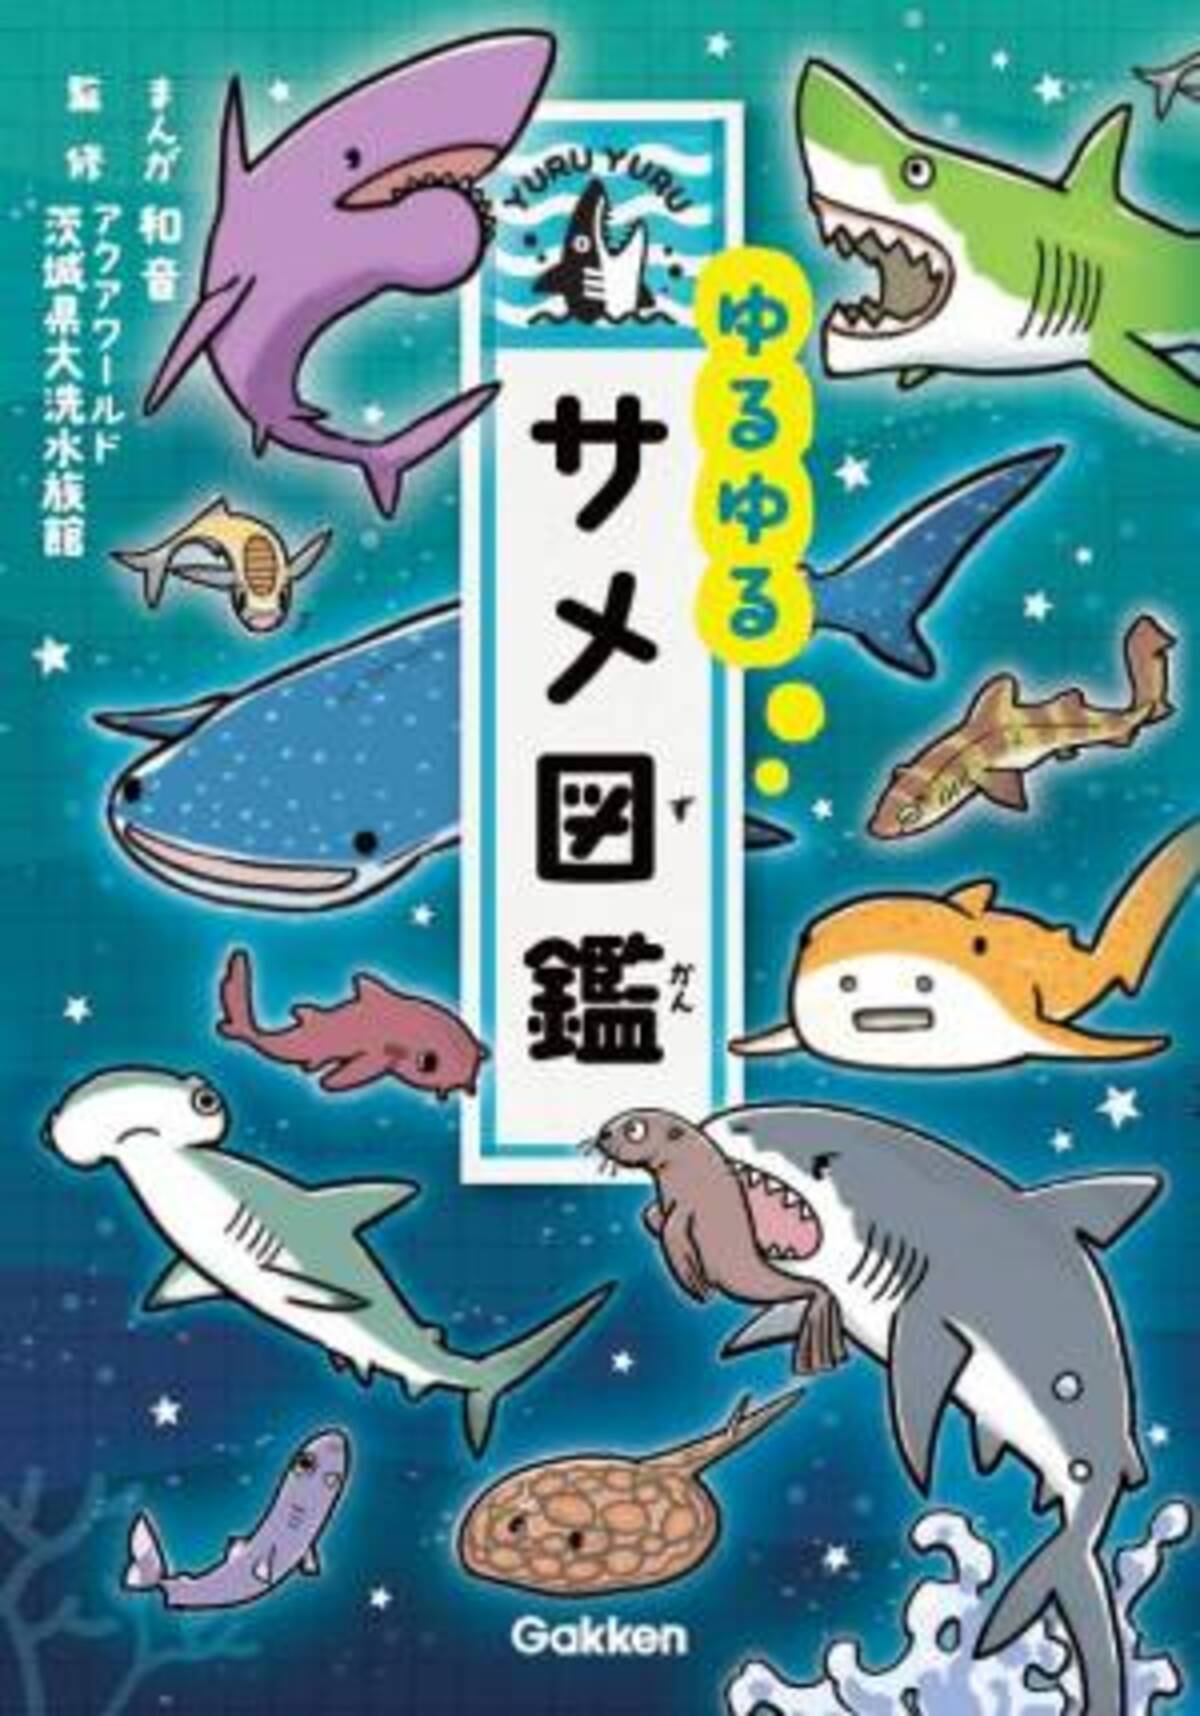 ゆるゆる４コマ図鑑シリーズ最新作 ゆるゆるサメ図鑑 発売 危険生物人気no 1のサメたちが60種類 以上登場 2020年5月27日 ウーマンエキサイト 1 2